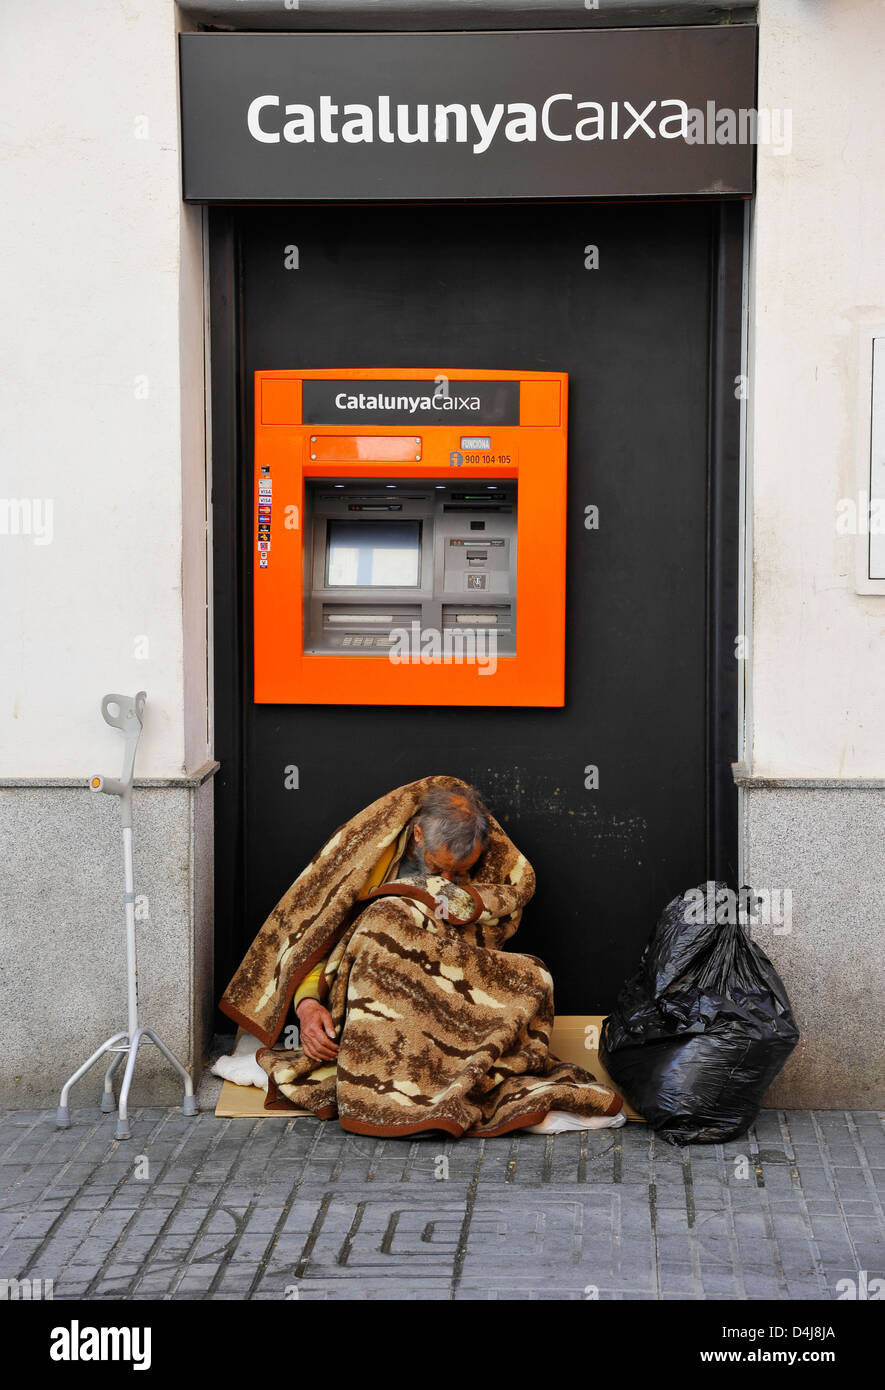 Hombre sin hogar envuelto en una manta se sienta en frente de un cajero automático del banco español 'CatalunyaCaixa' en España Foto de stock